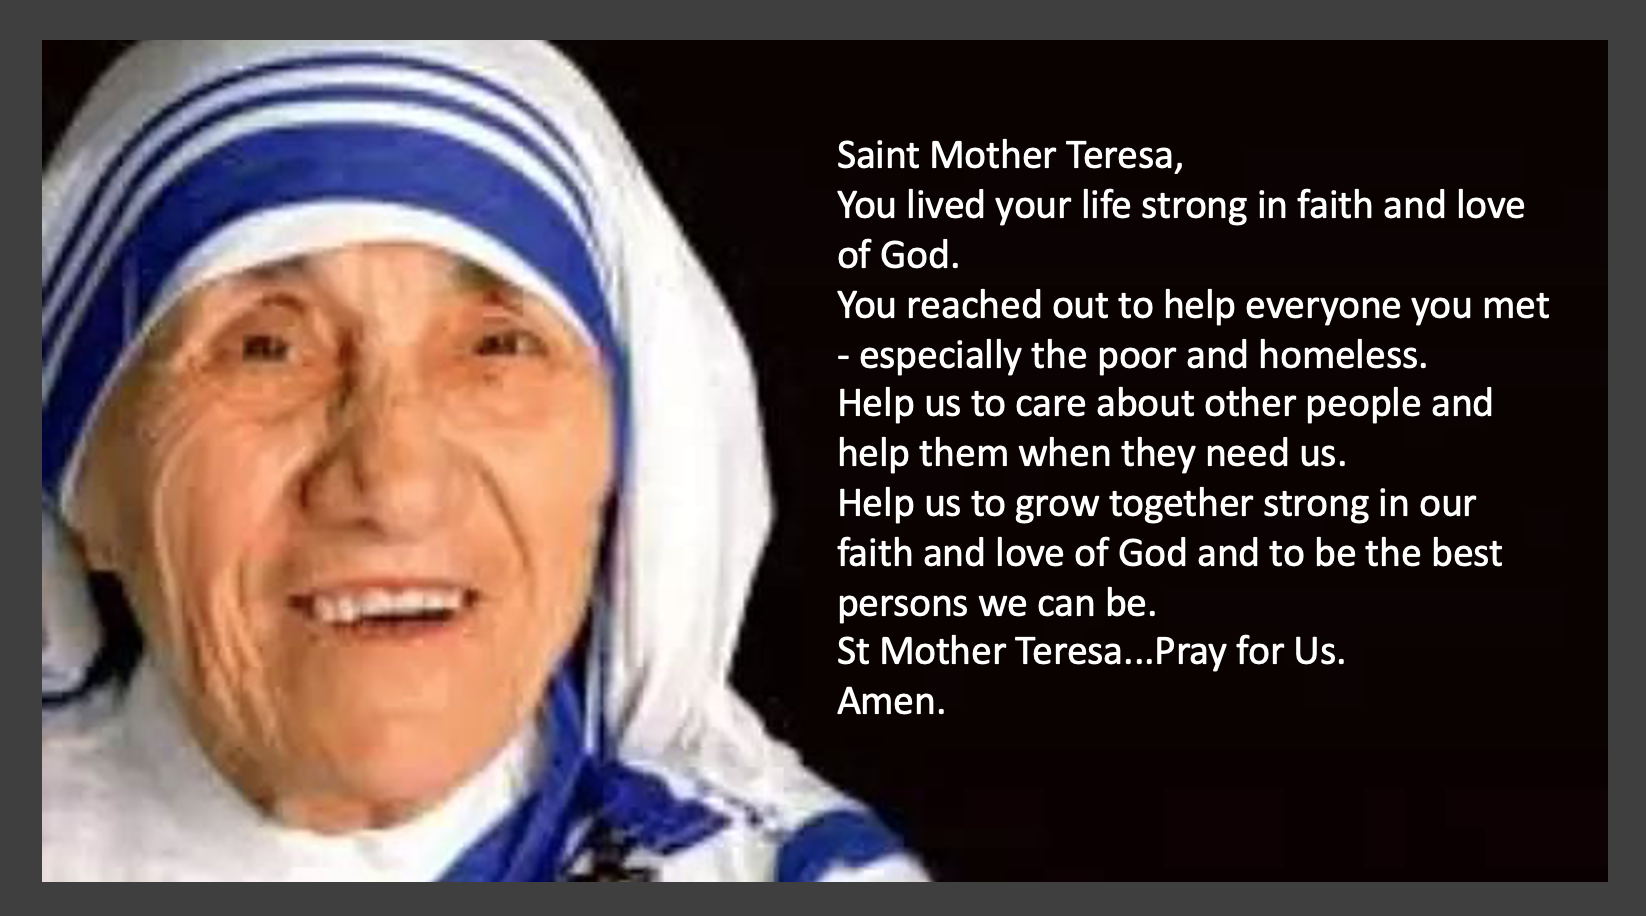 دعای روزانه مادر ترزا